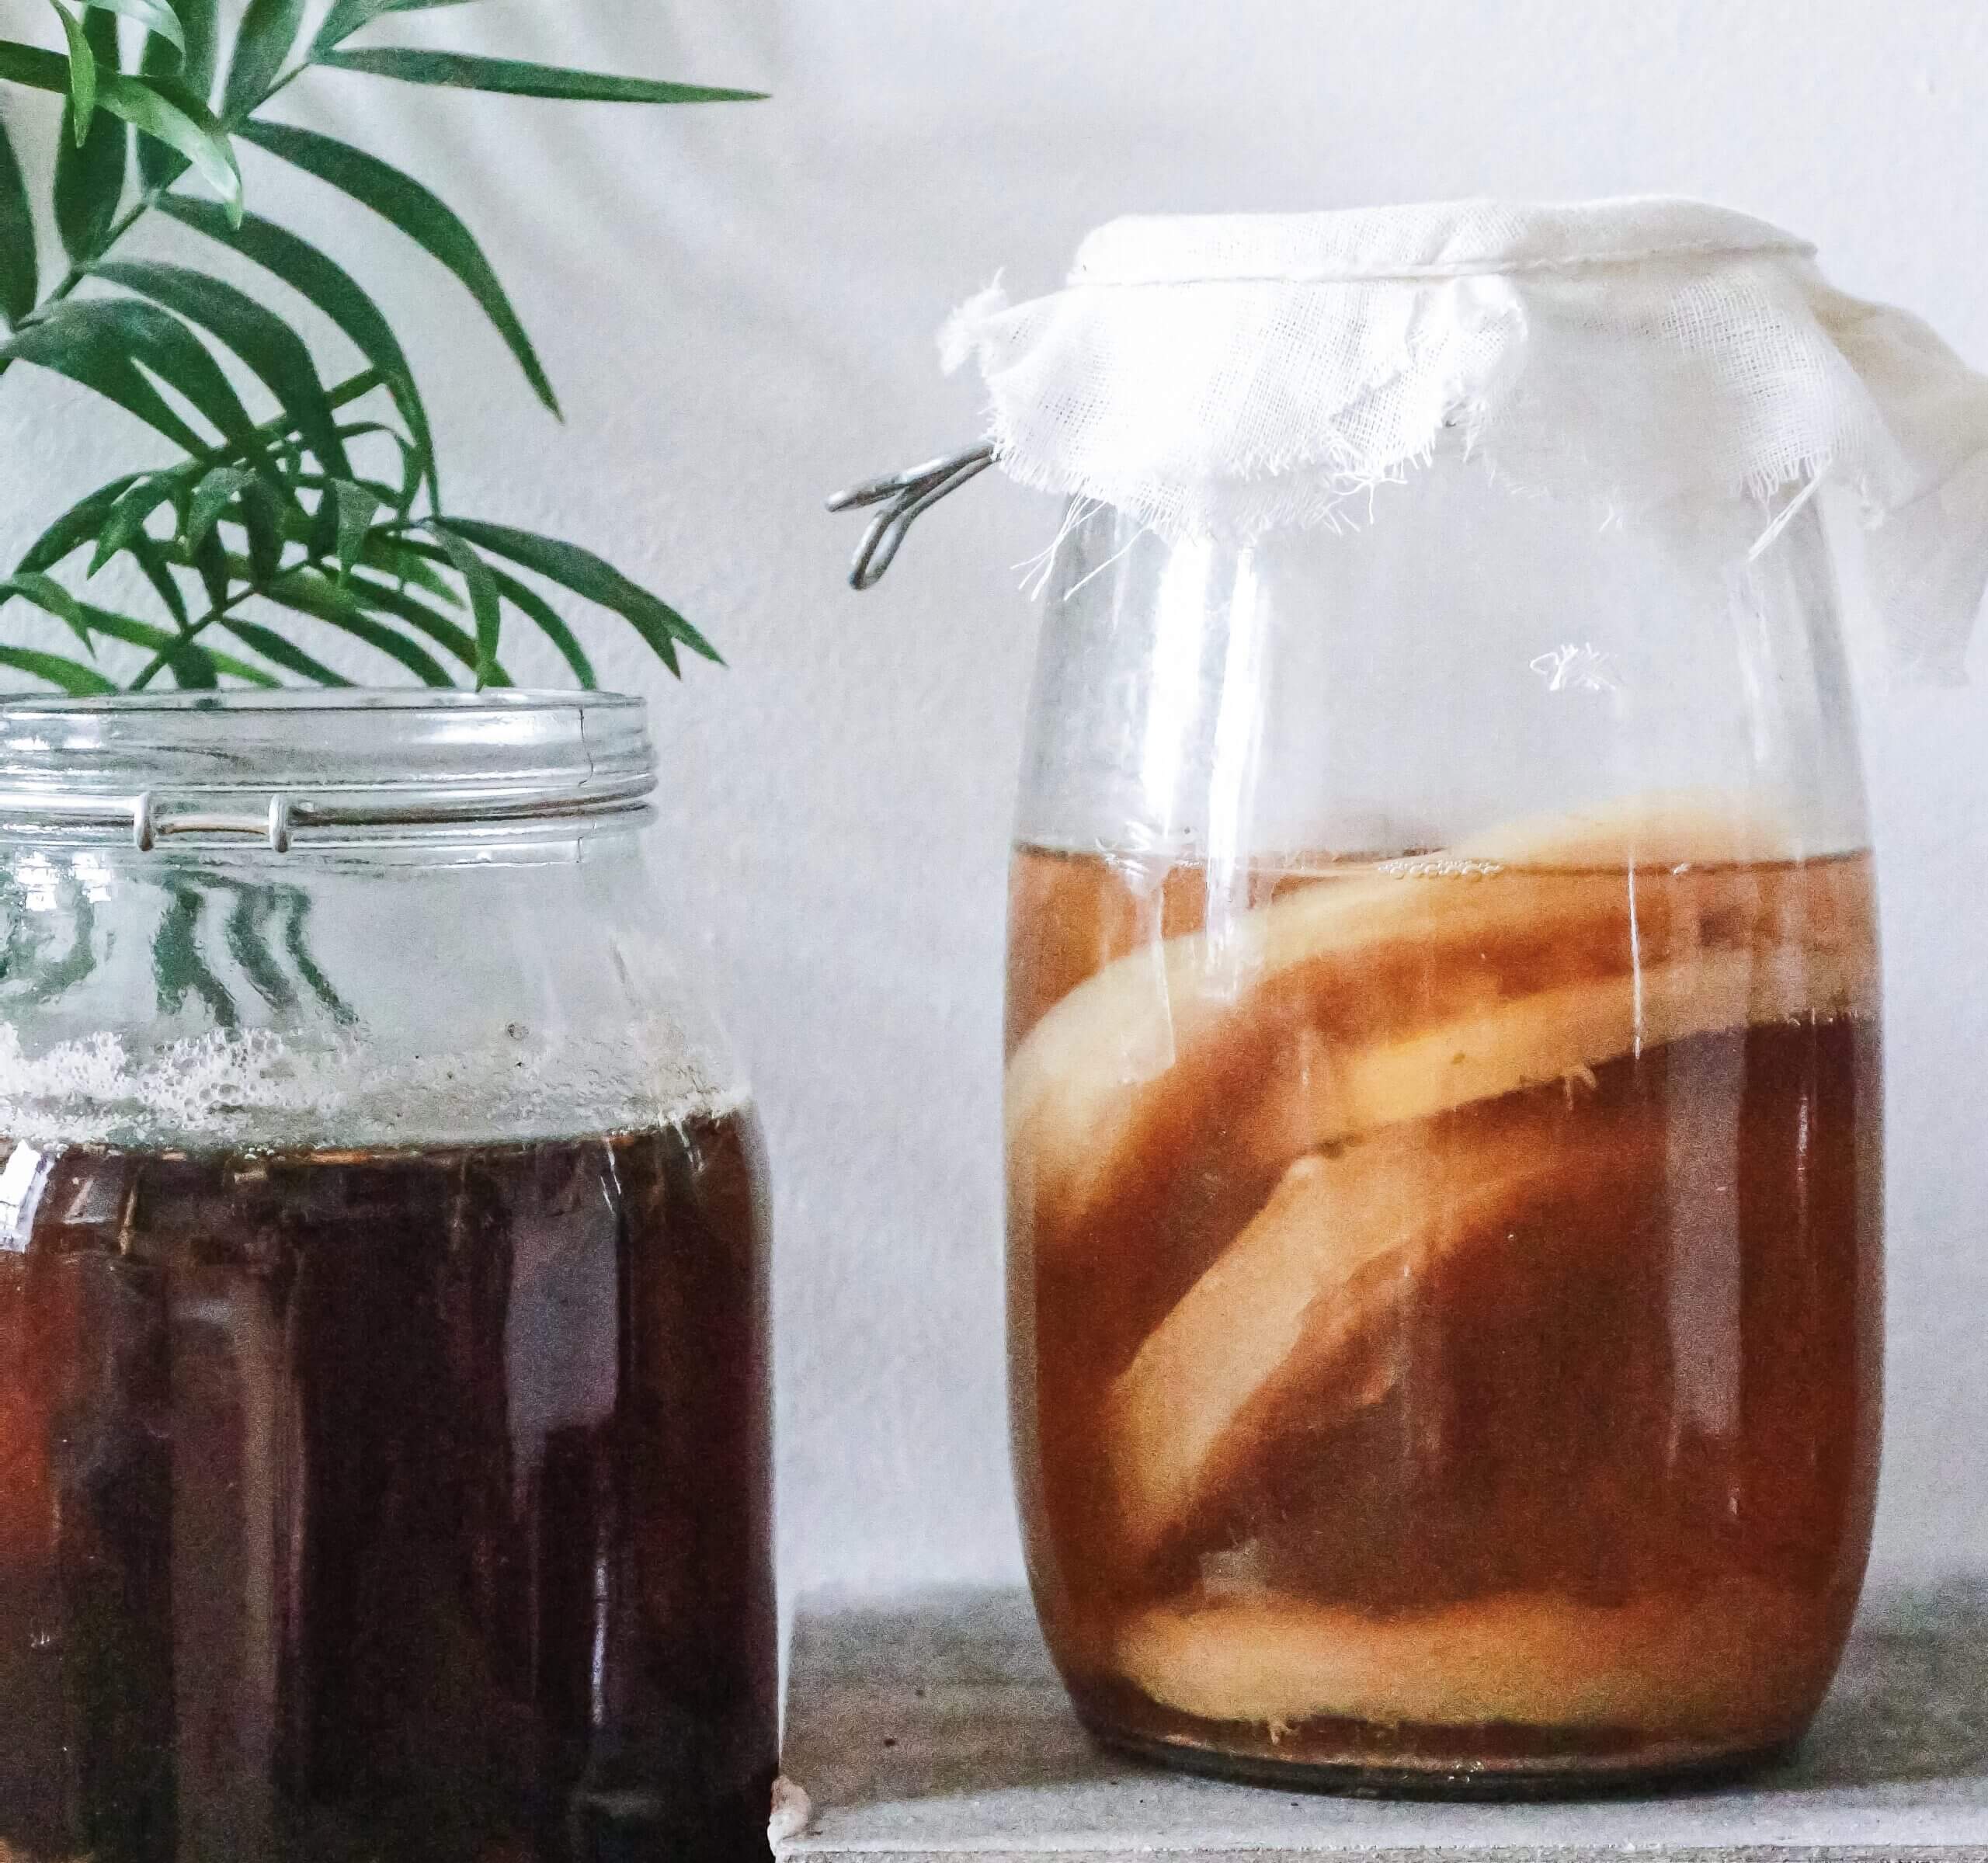 Homemade kombucha in jars